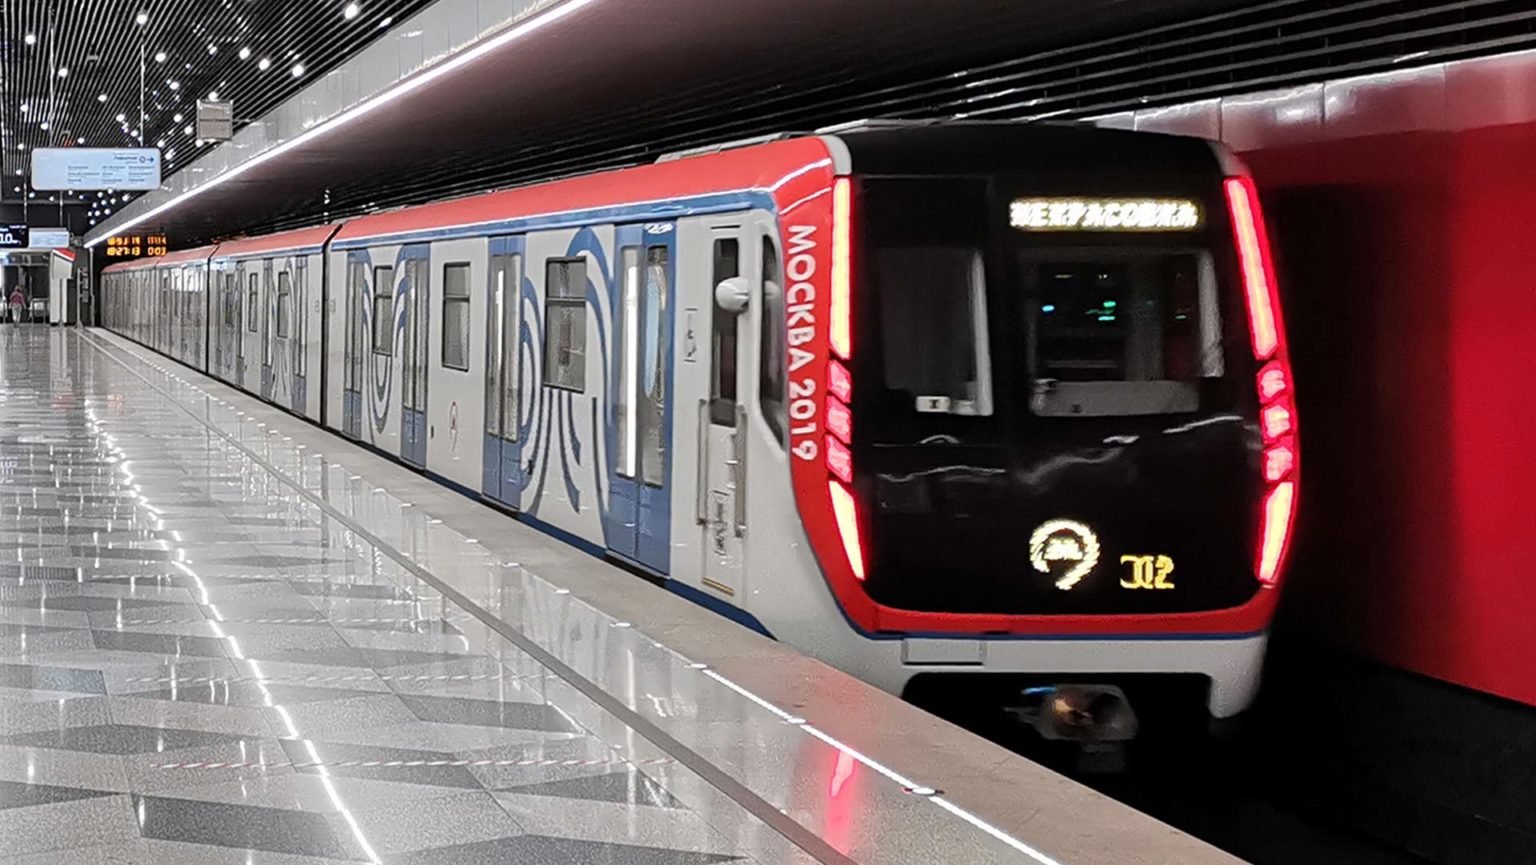 поезд метро москва 2020 в белой окраске